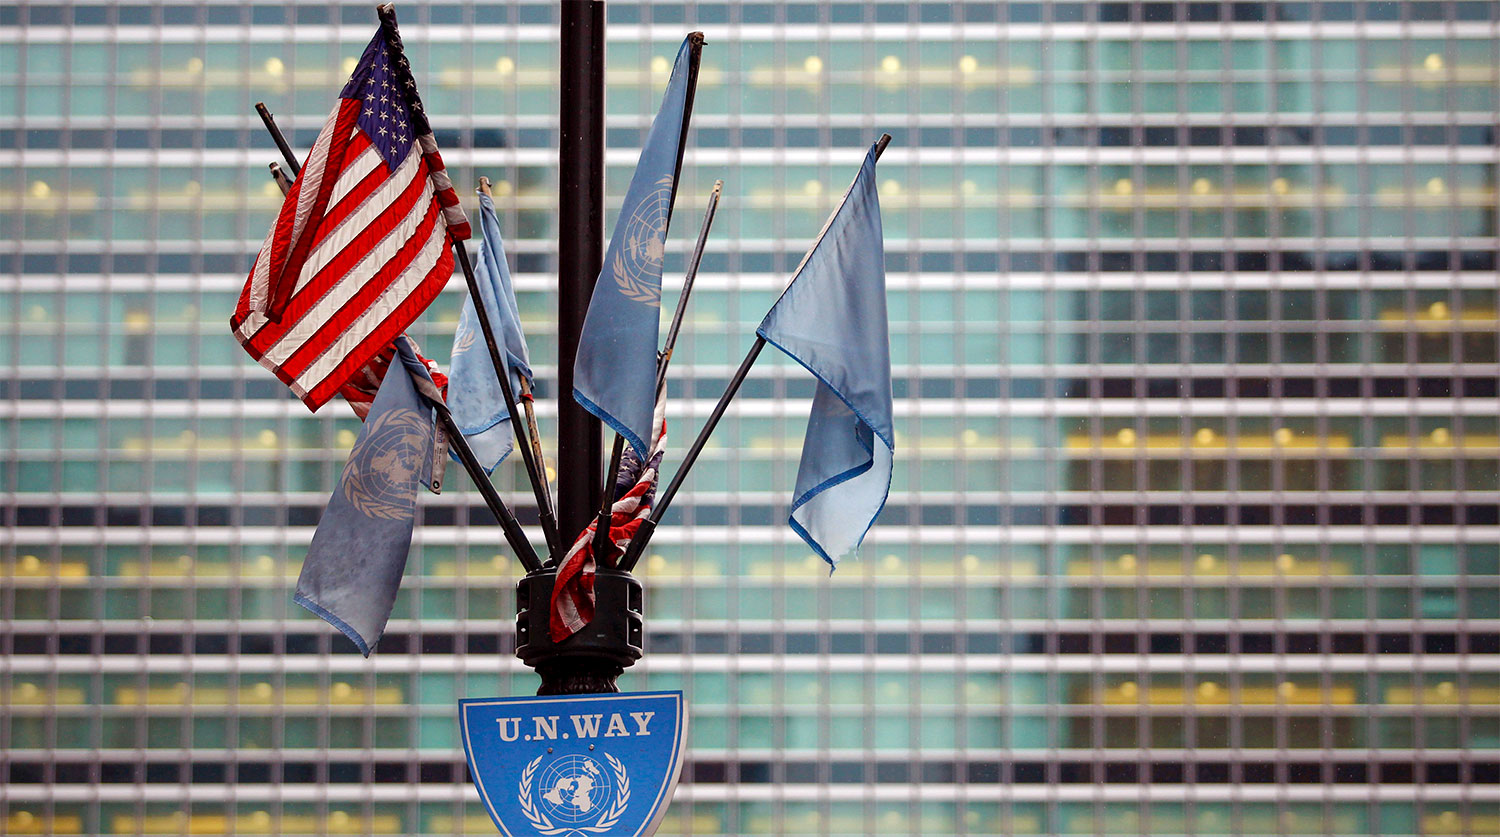 Оон центральный. Штаб ООН В Нью-Йорке. Штаб квартира ООН. Здание ООН В Нью-Йорке. Здание ООН В США.